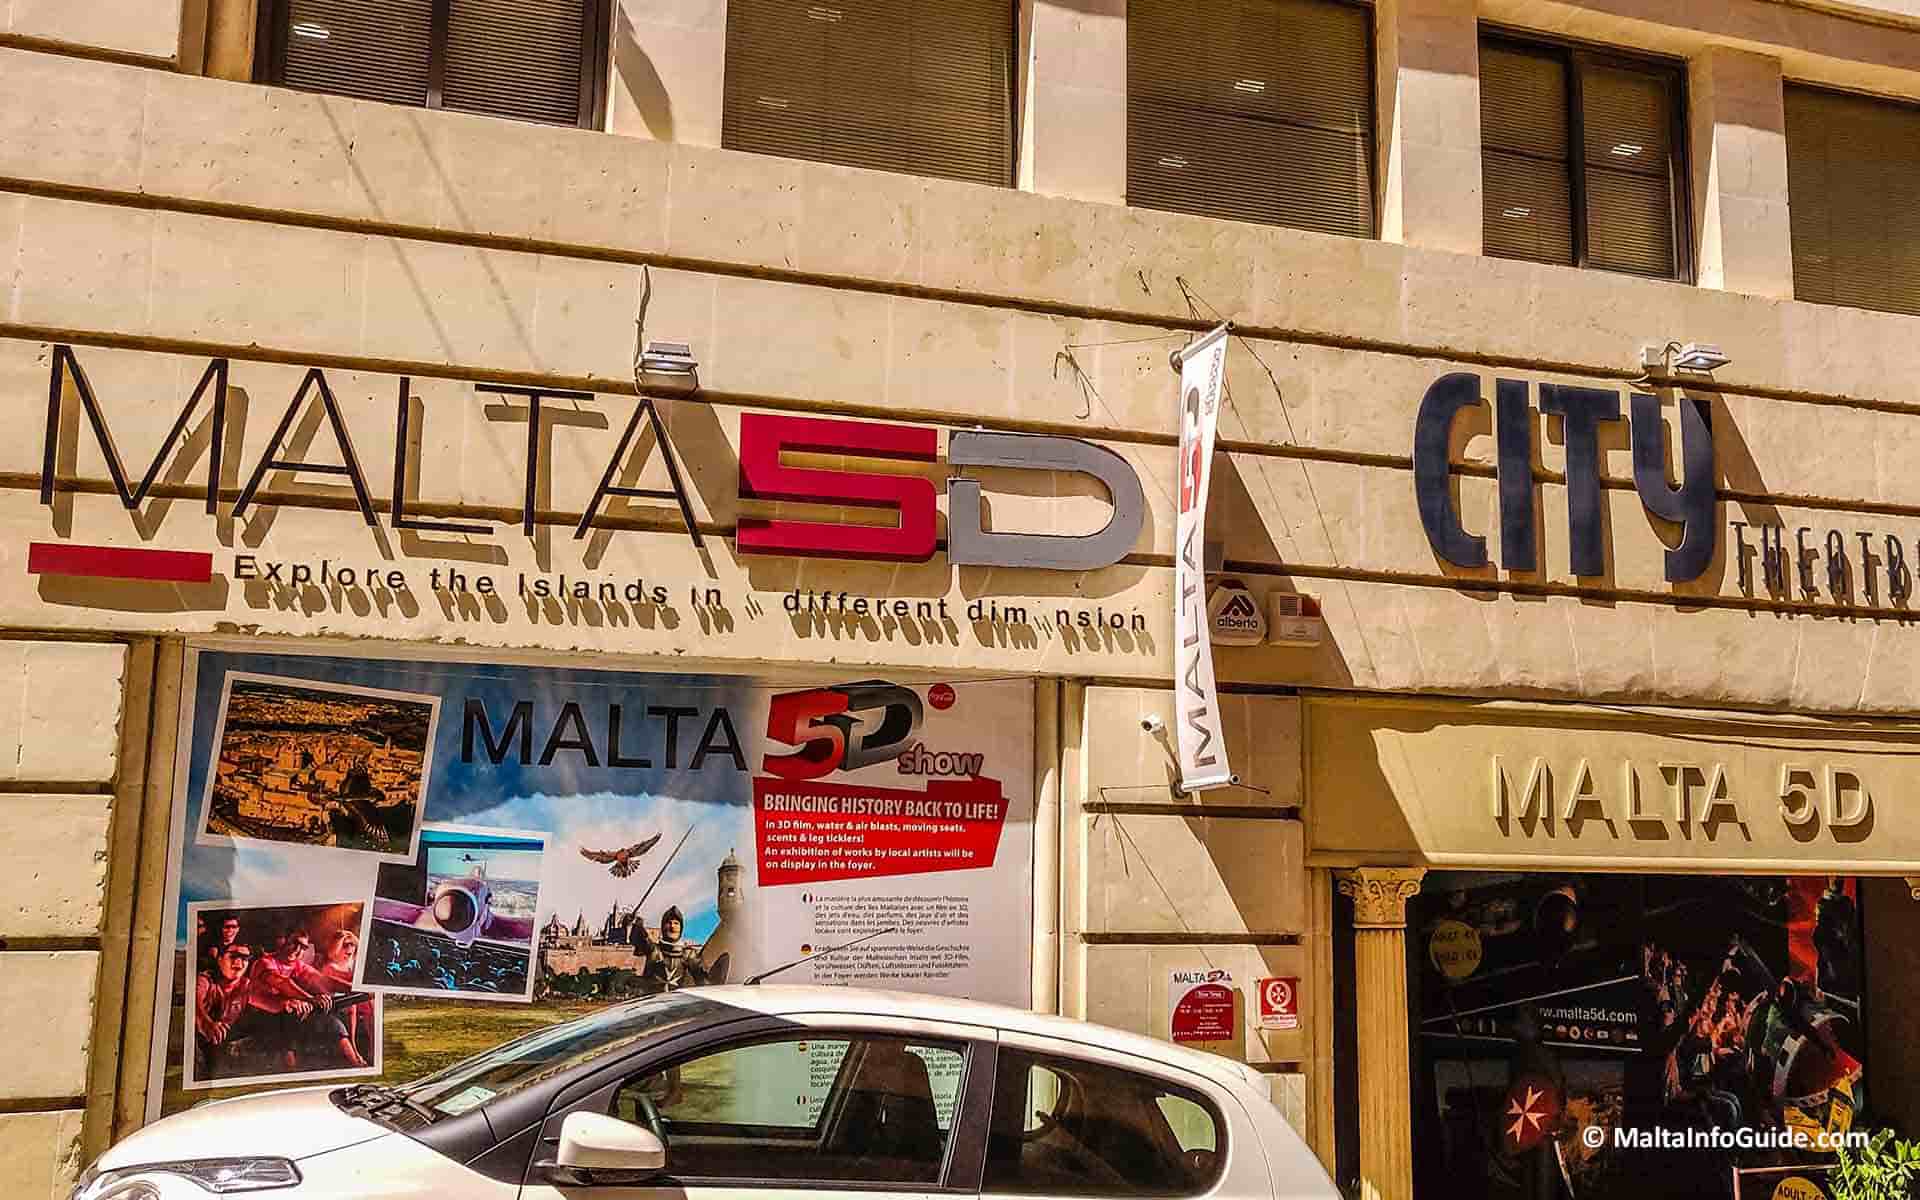 The facade of Malta 5D.